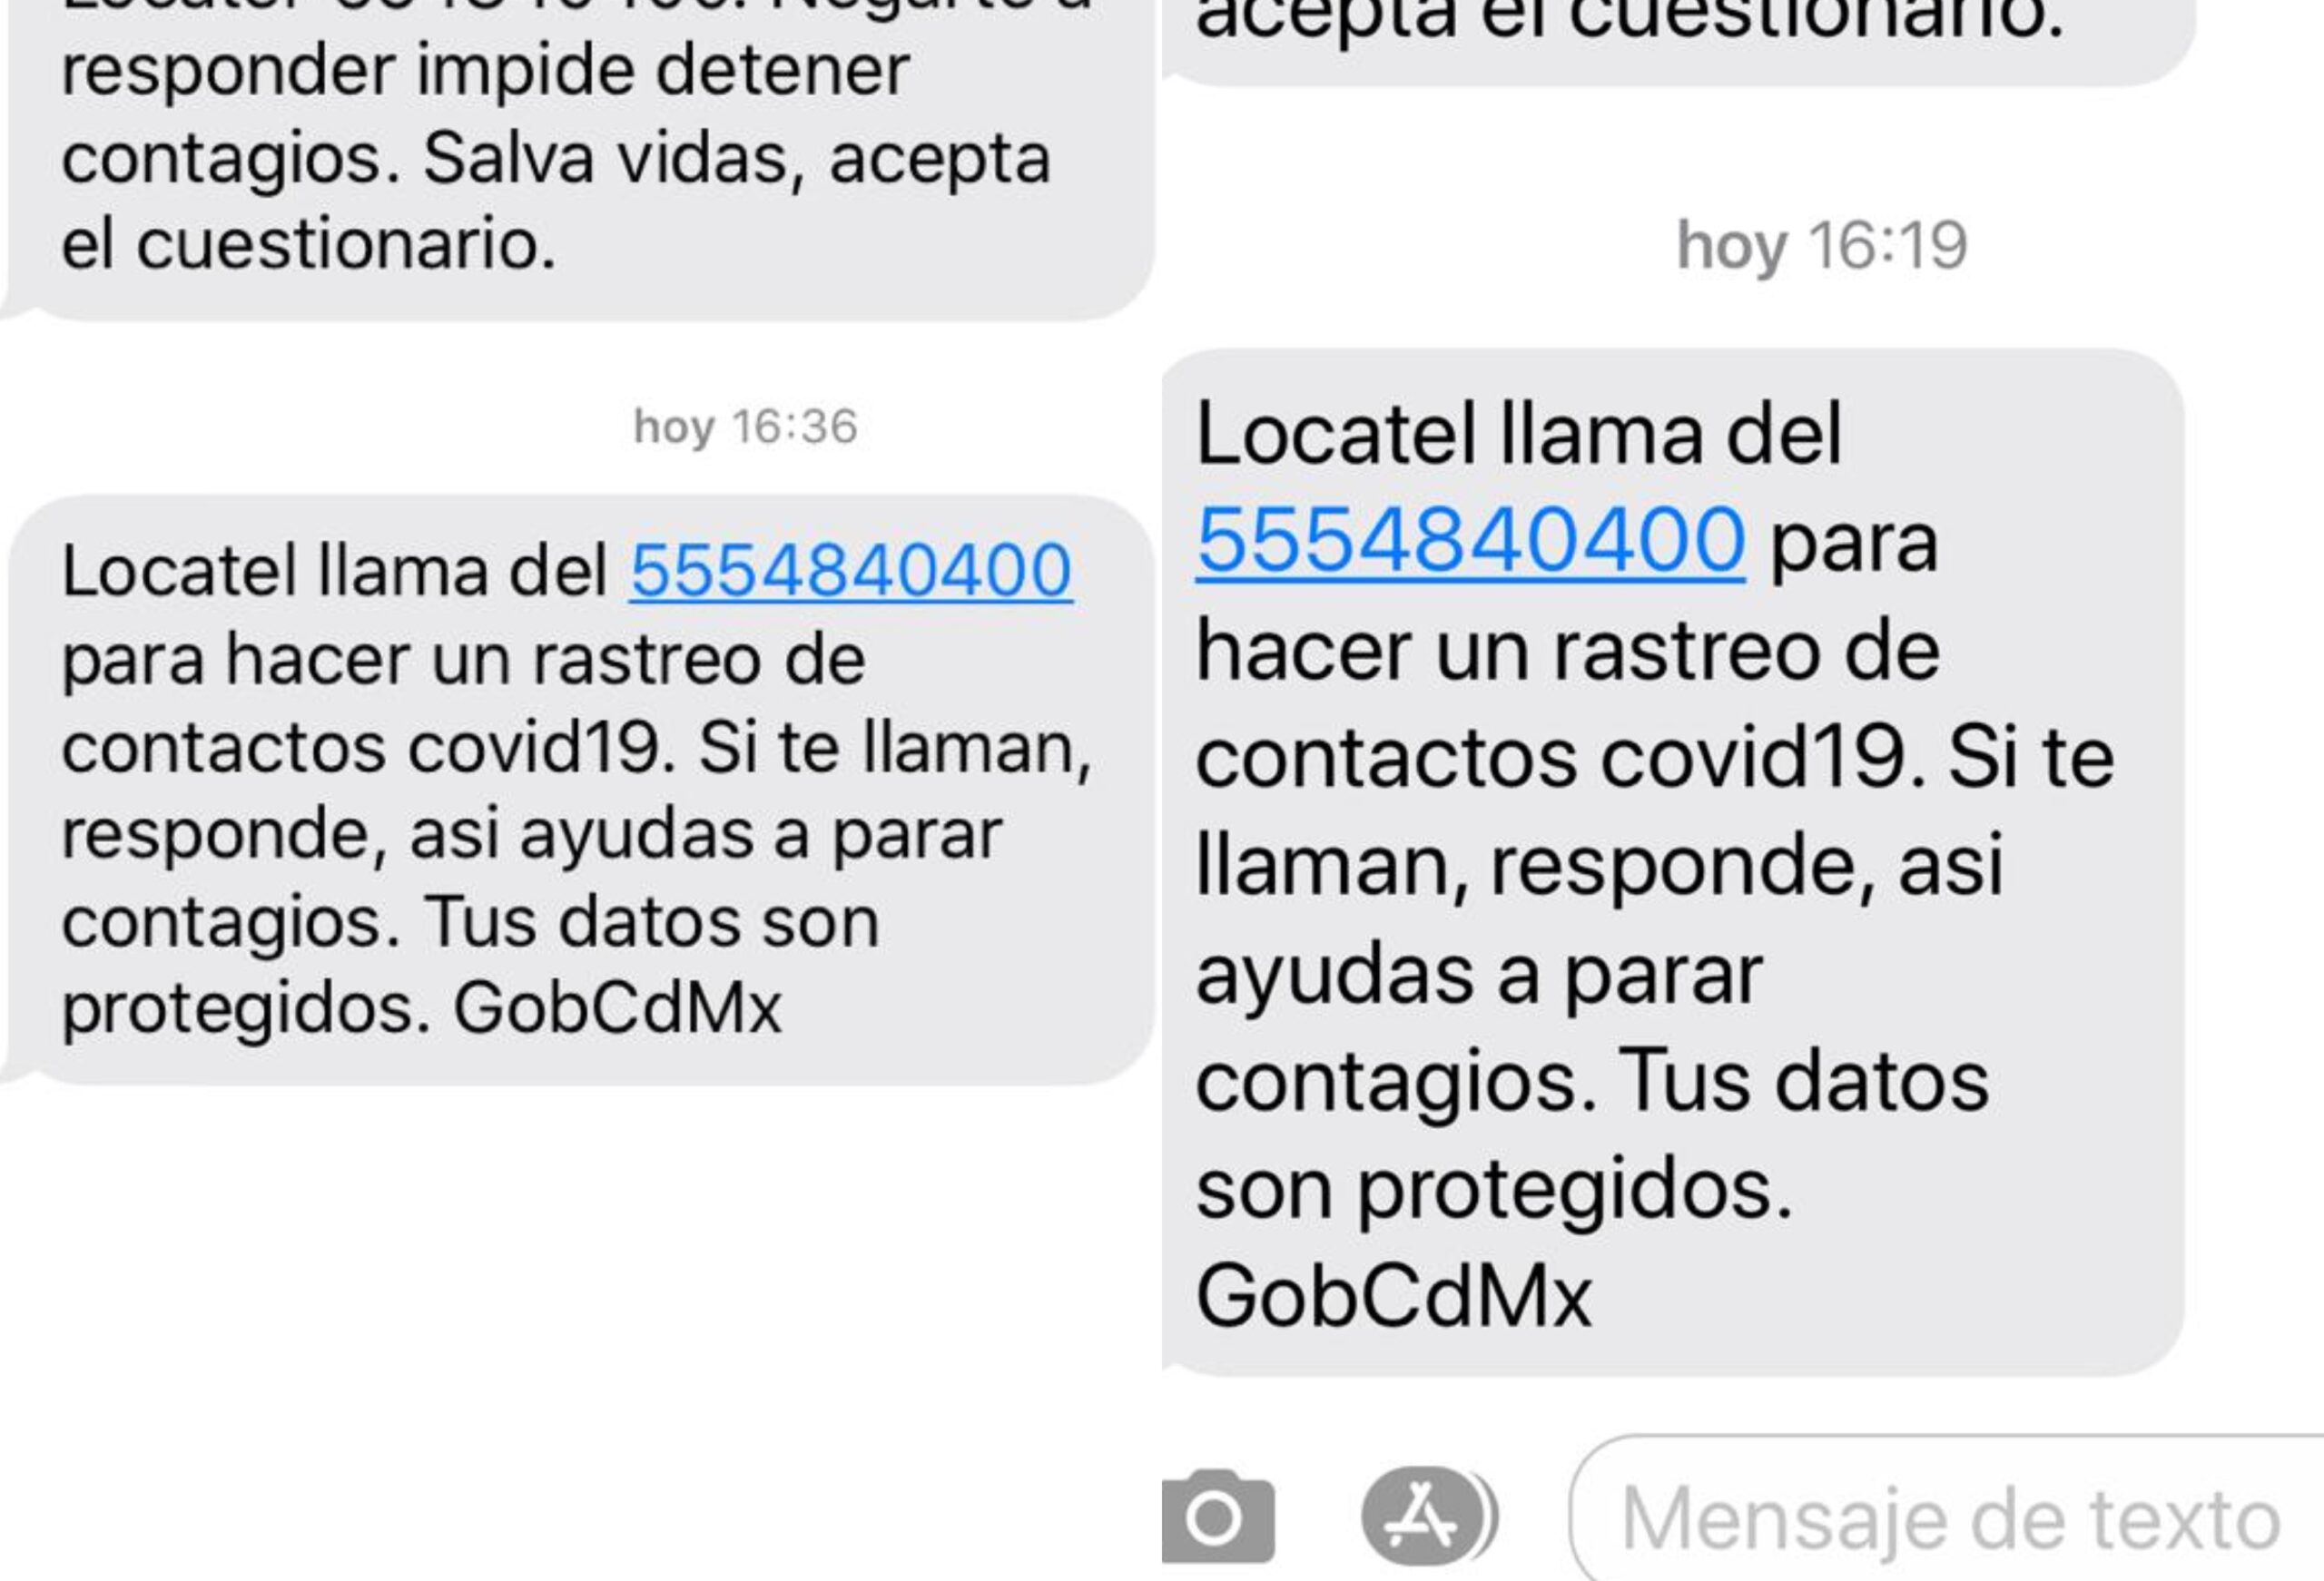 Gobierno de la CDMX envía mensajes para detectar contagios de Covid-19